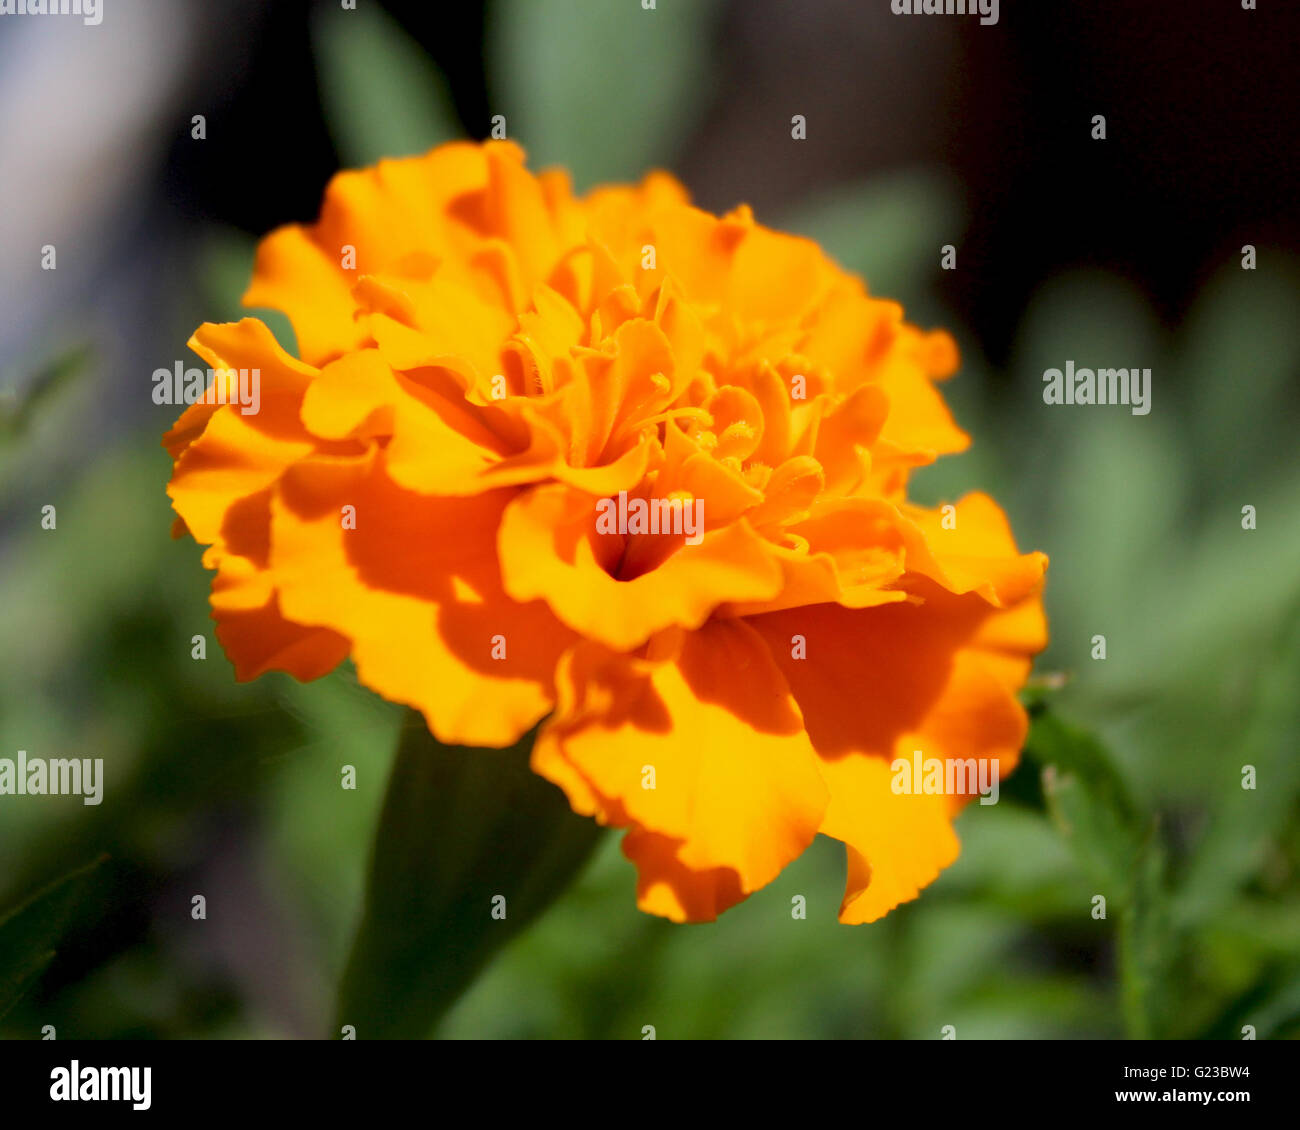 Gros plan d'une fleur Oeillet orange vif (Tagetes patula), poussant dans un jardin naturel, avec un arrière-plan vert. Banque D'Images